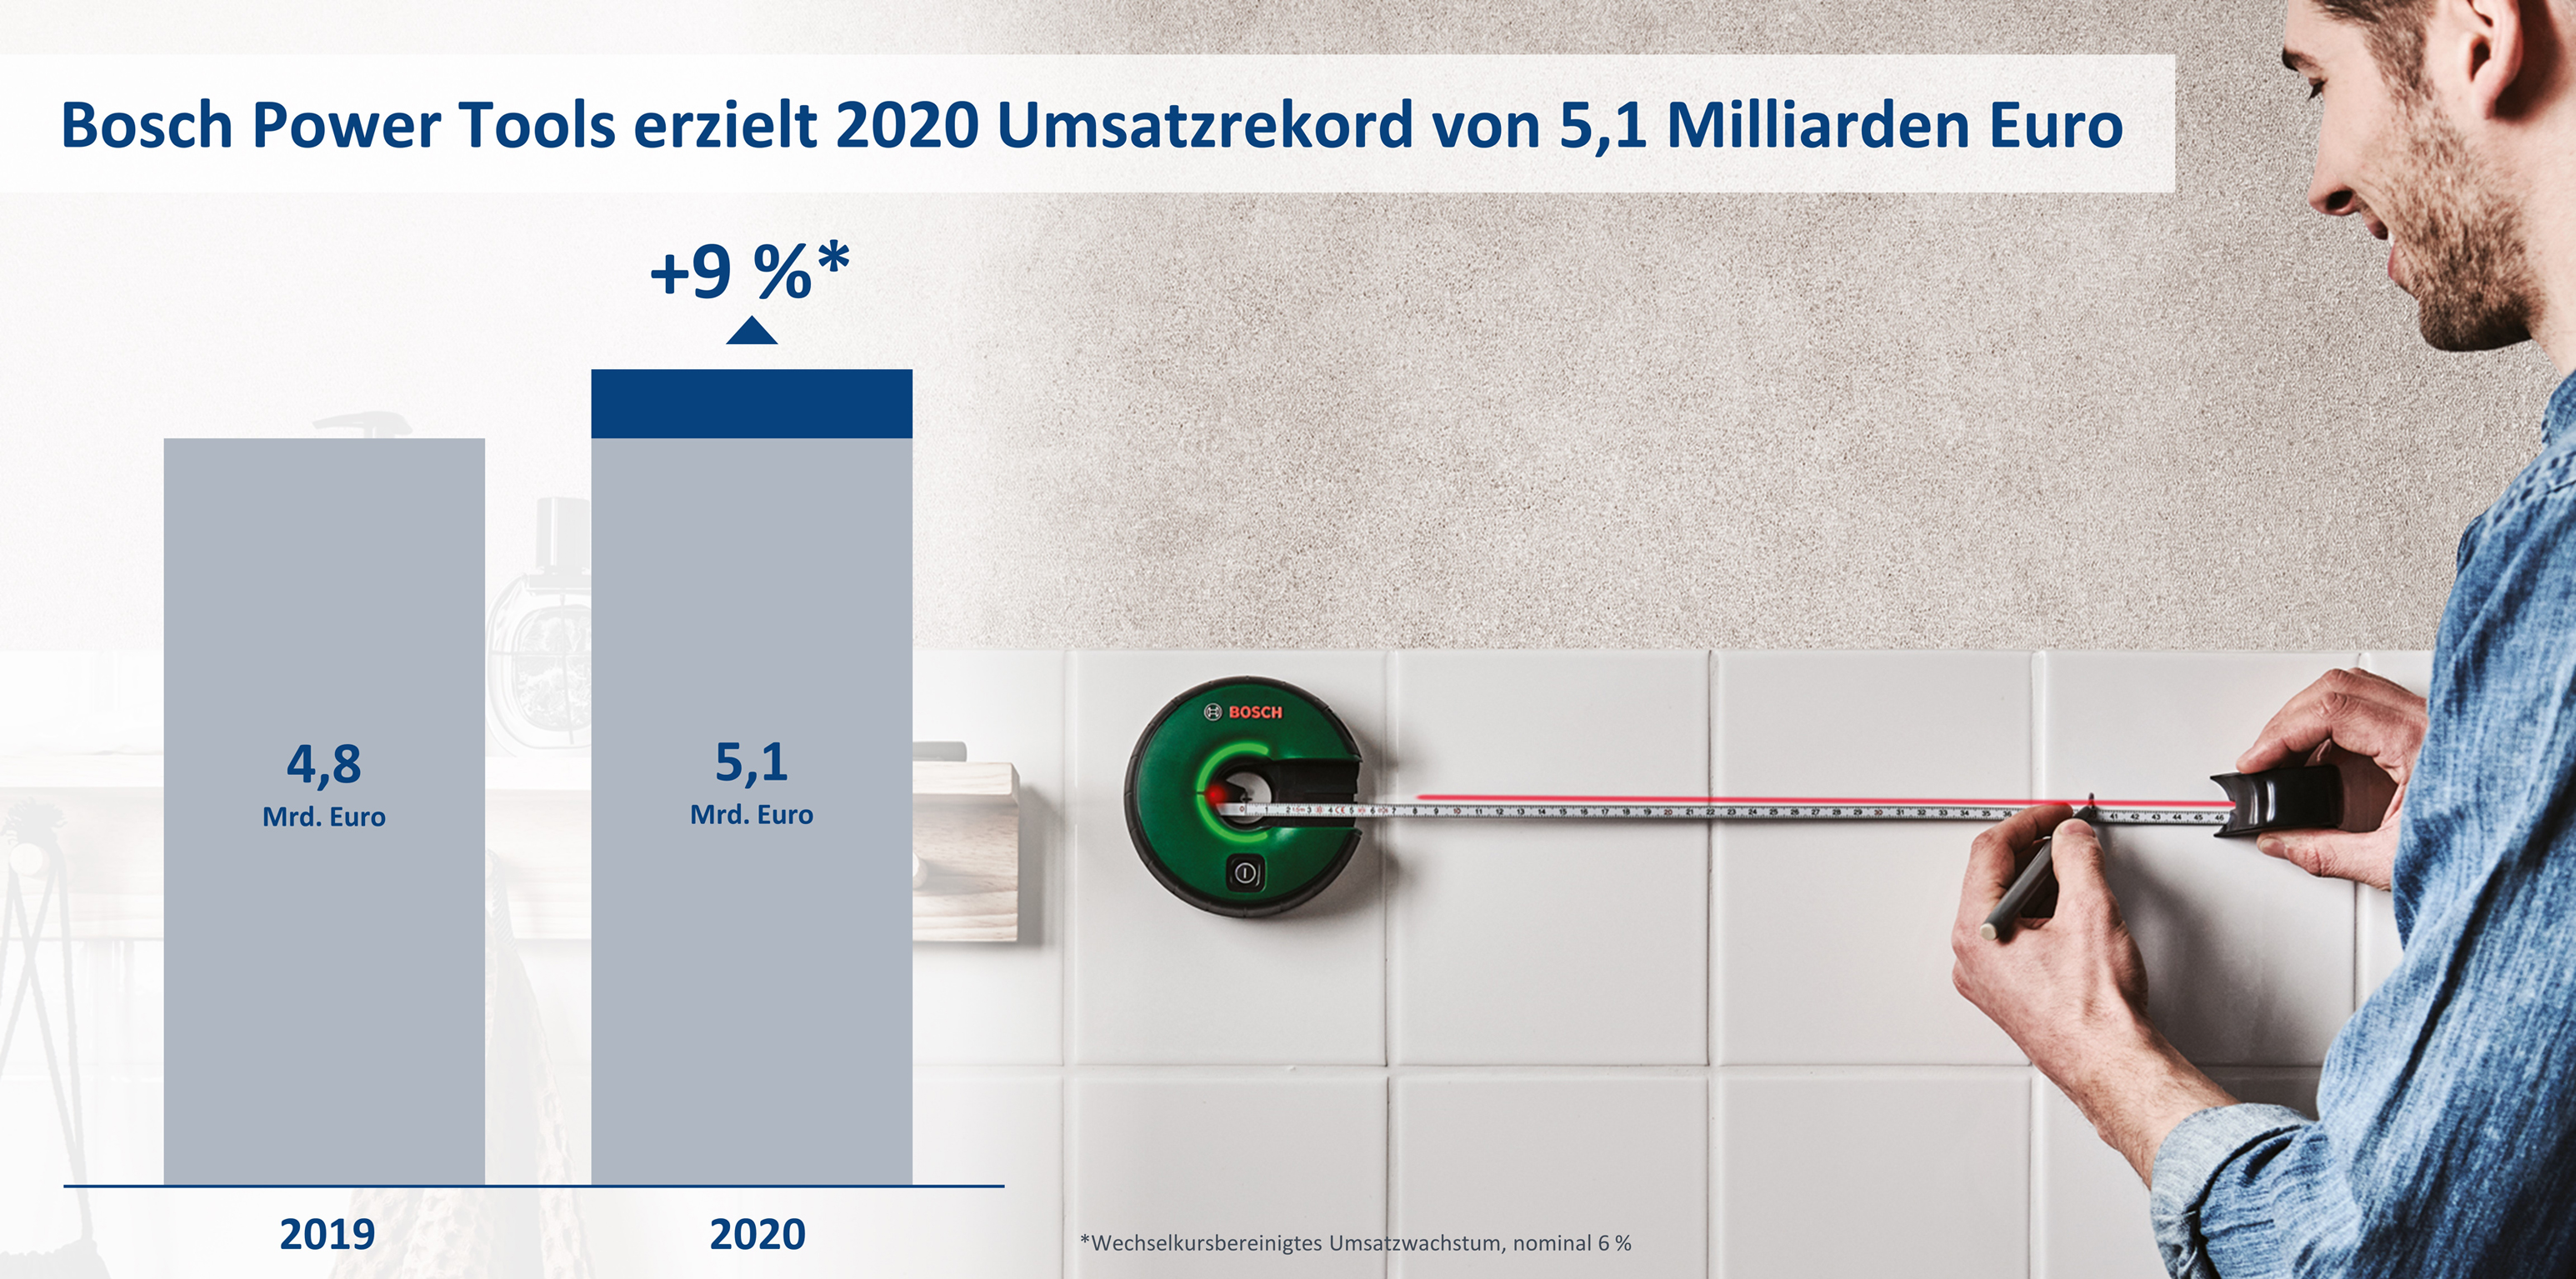 Bosch Power Tools erzielt 2020 Umsatzrekord von 5,1 Milliarden Euro